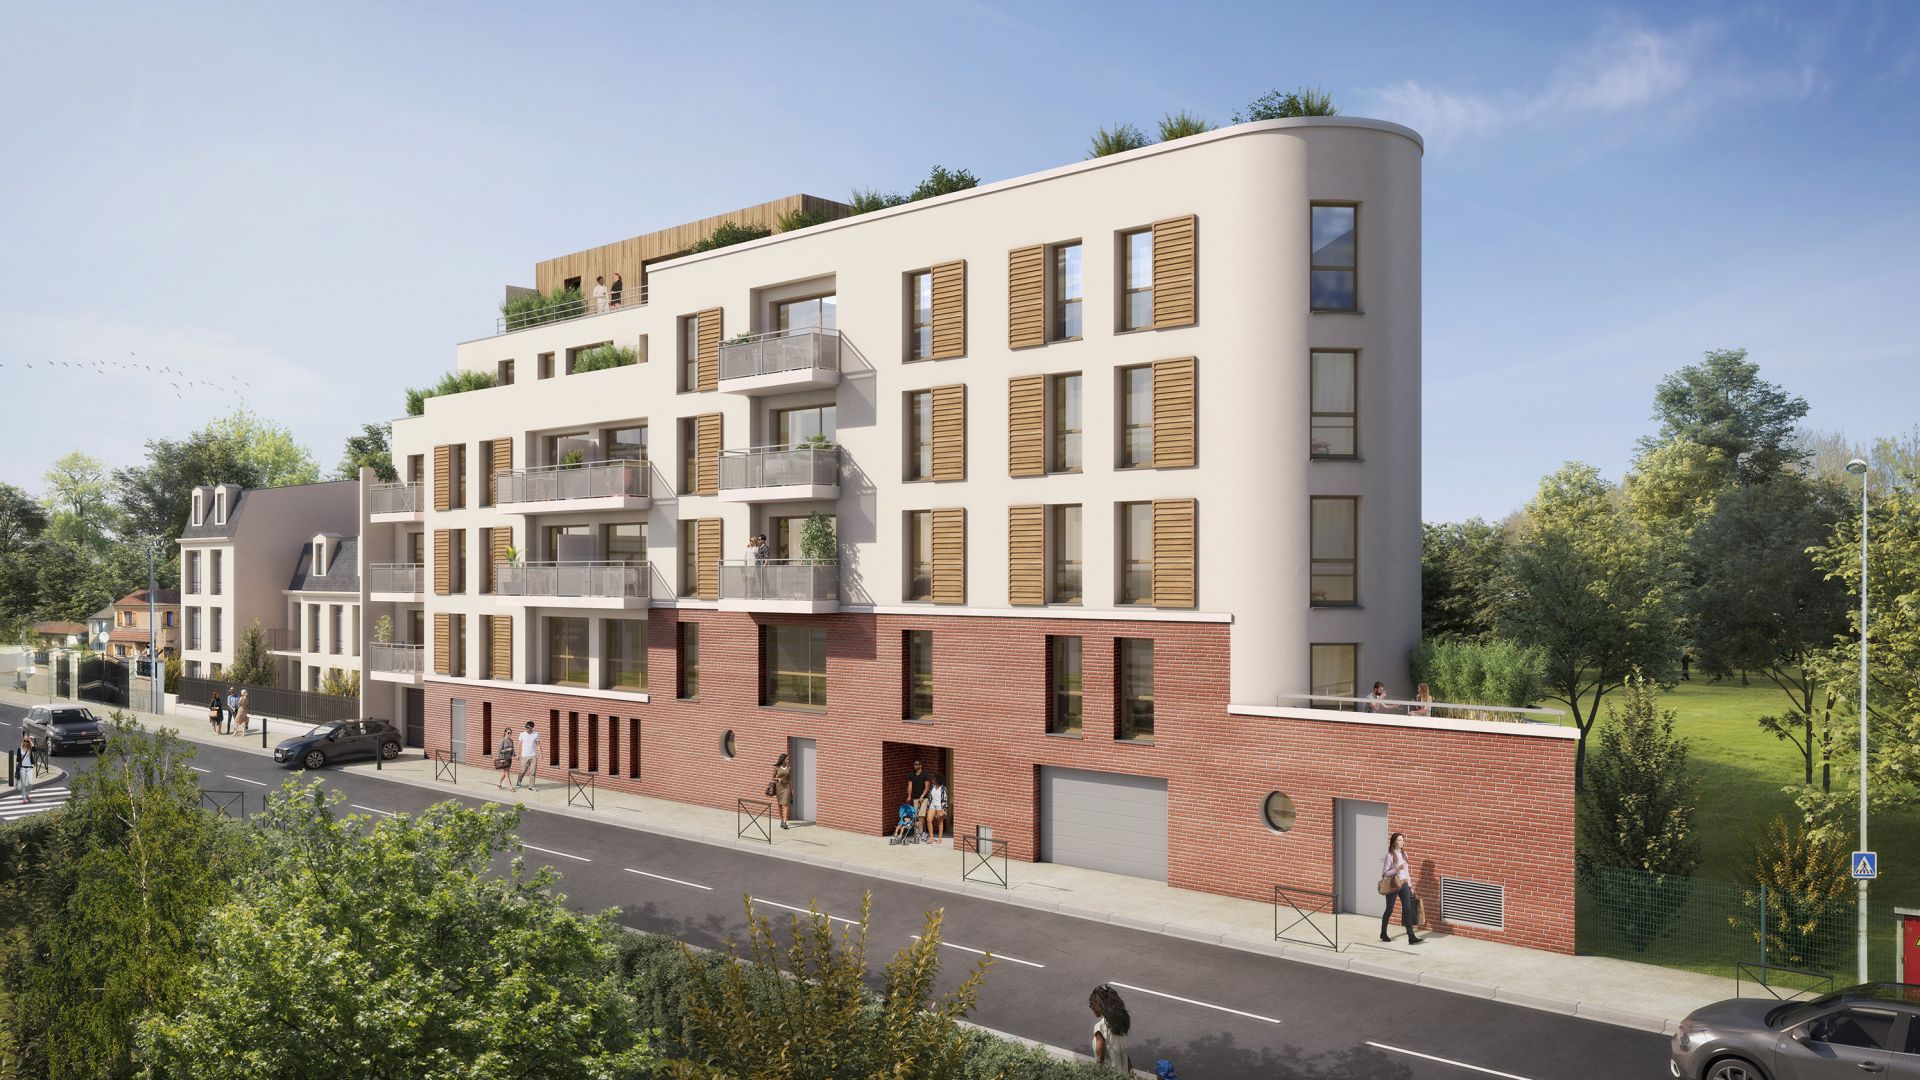 Greencity immobilier - achat appartements neufs du T1 au T3 - Résidence Le Fairway - 93270 Sevran